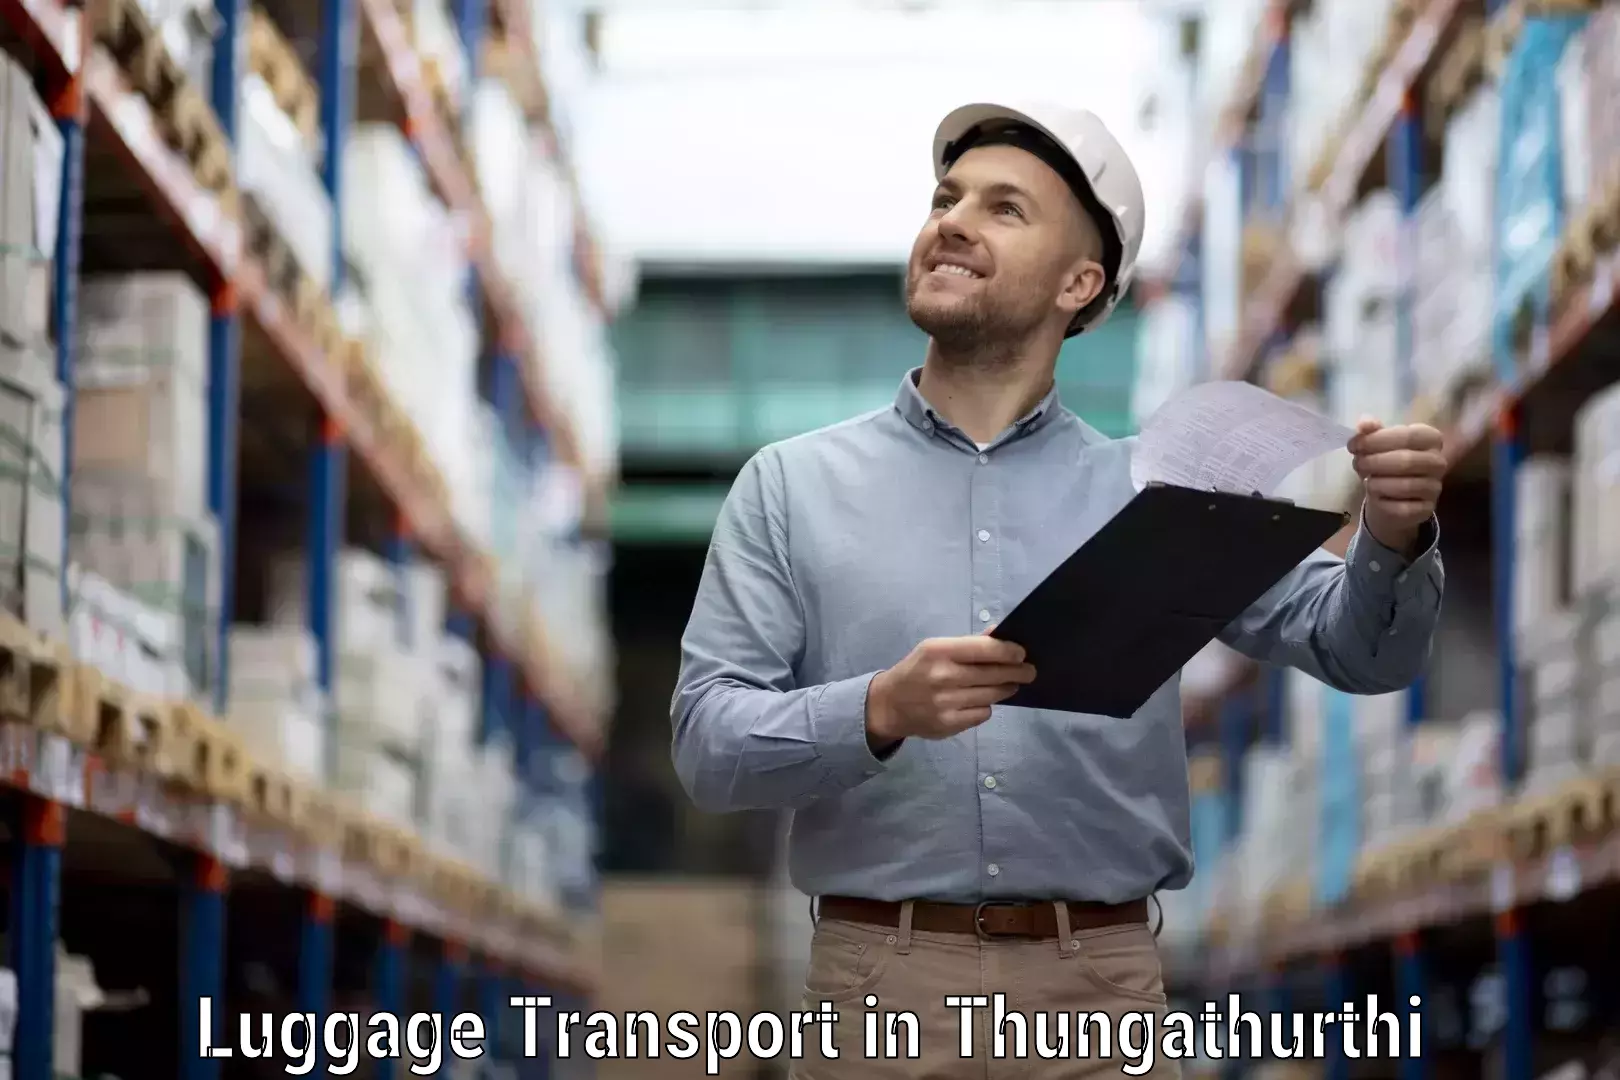 Baggage shipping optimization in Thungathurthi